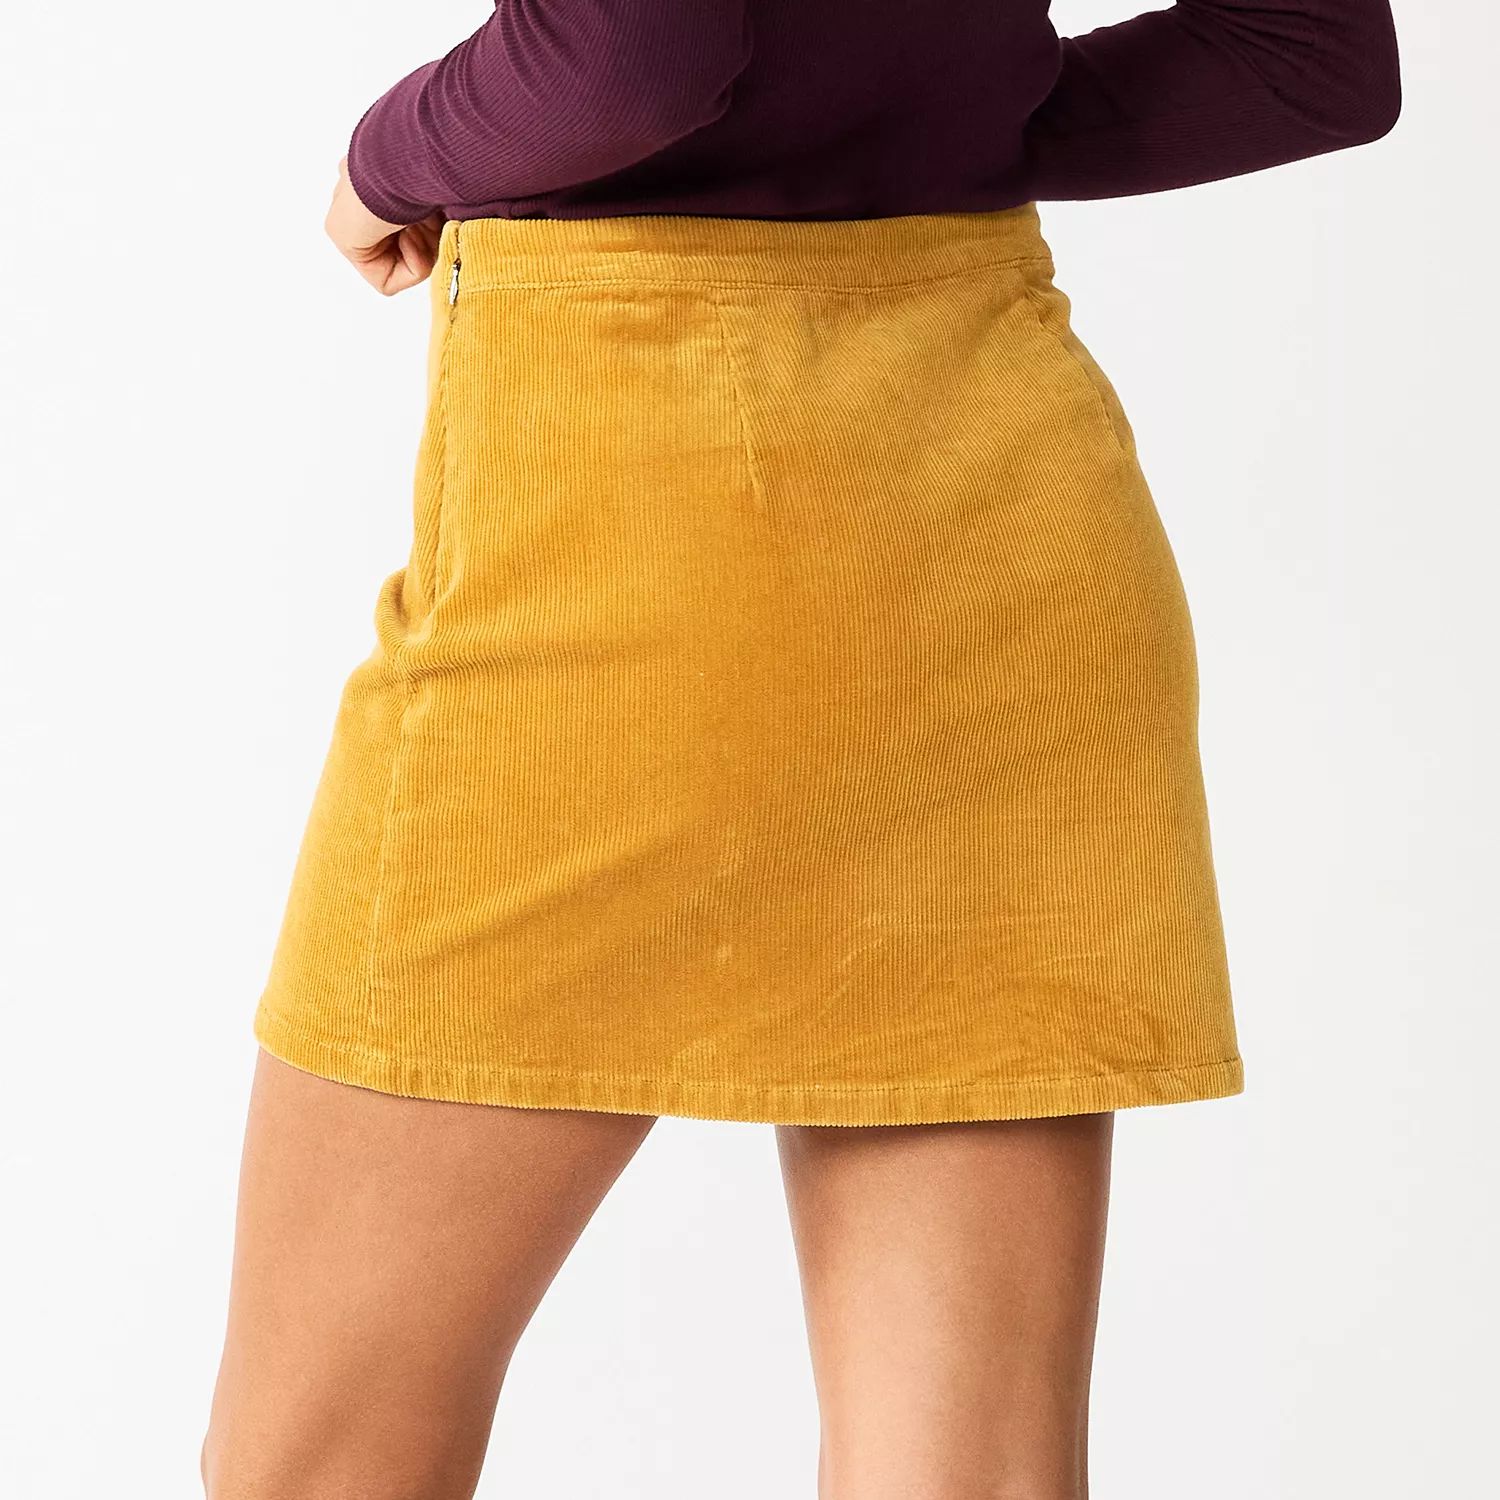 Мини-юбка SO для подростков со шнуровкой спереди SO спортивные штаны honey eevi цвет mustard yellow